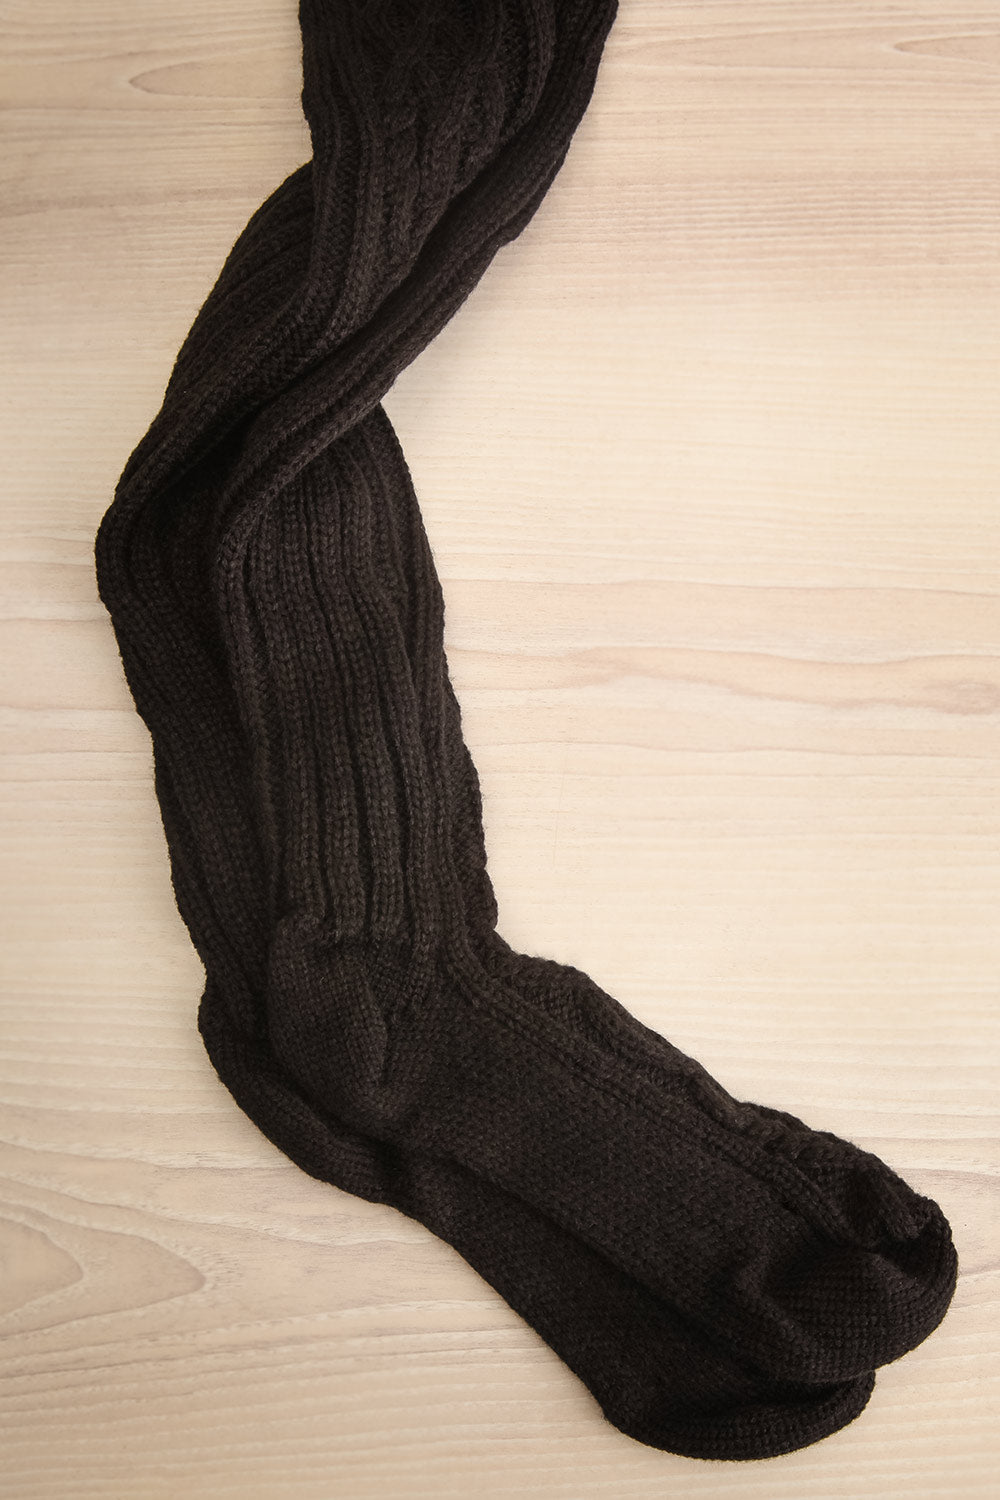 Bois Cannelle Black Cable Knit Knee-High Socks | La petite garçonne